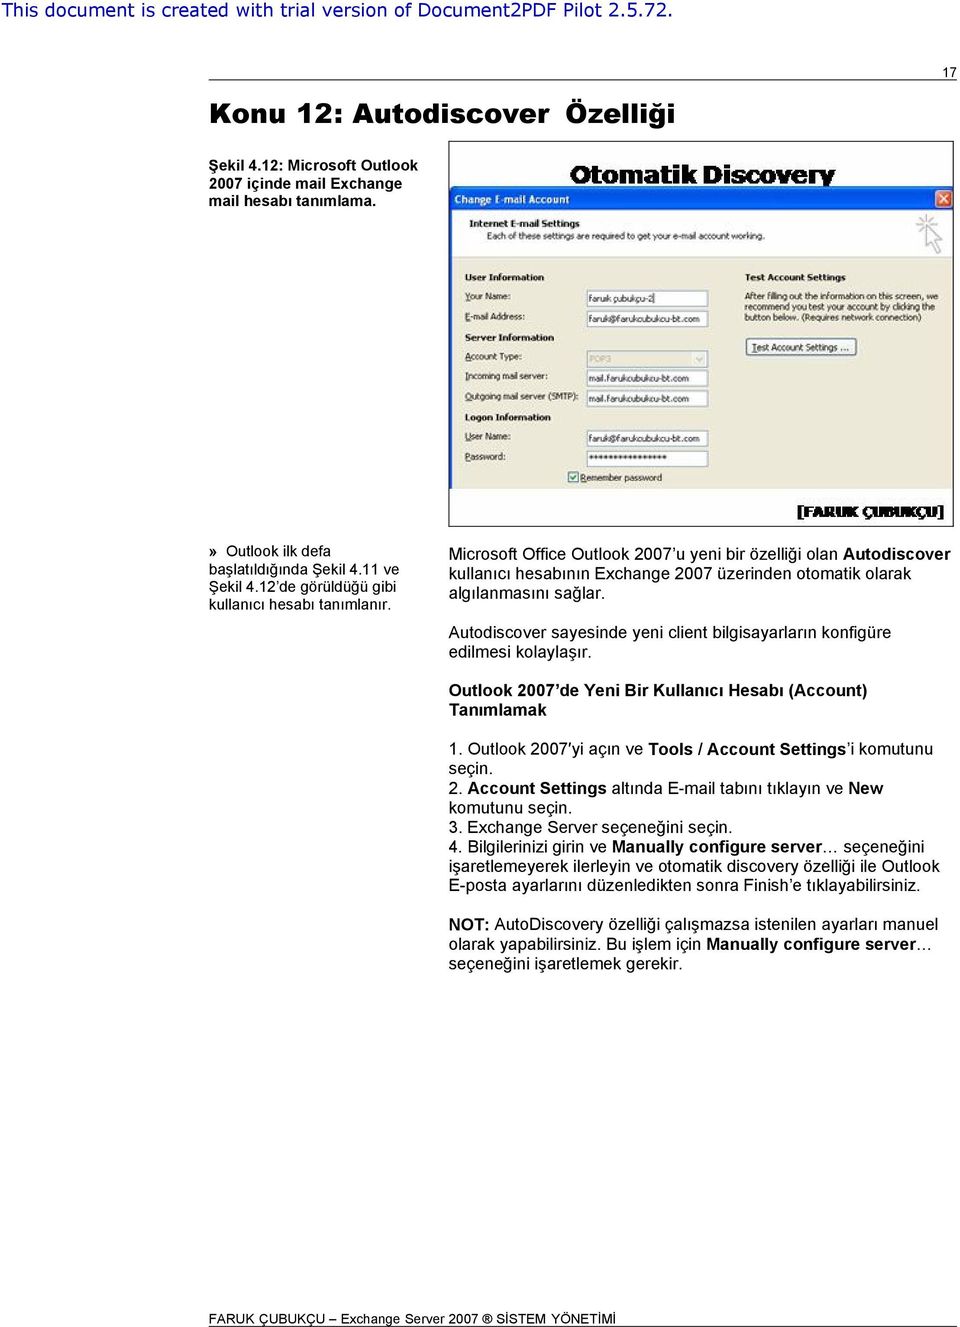 Autodiscover sayesinde yeni client bilgisayarların konfigüre edilmesi kolaylaşır. Outlook 2007 de Yeni Bir Kullanıcı Hesabı (Account) Tanımlamak 1.